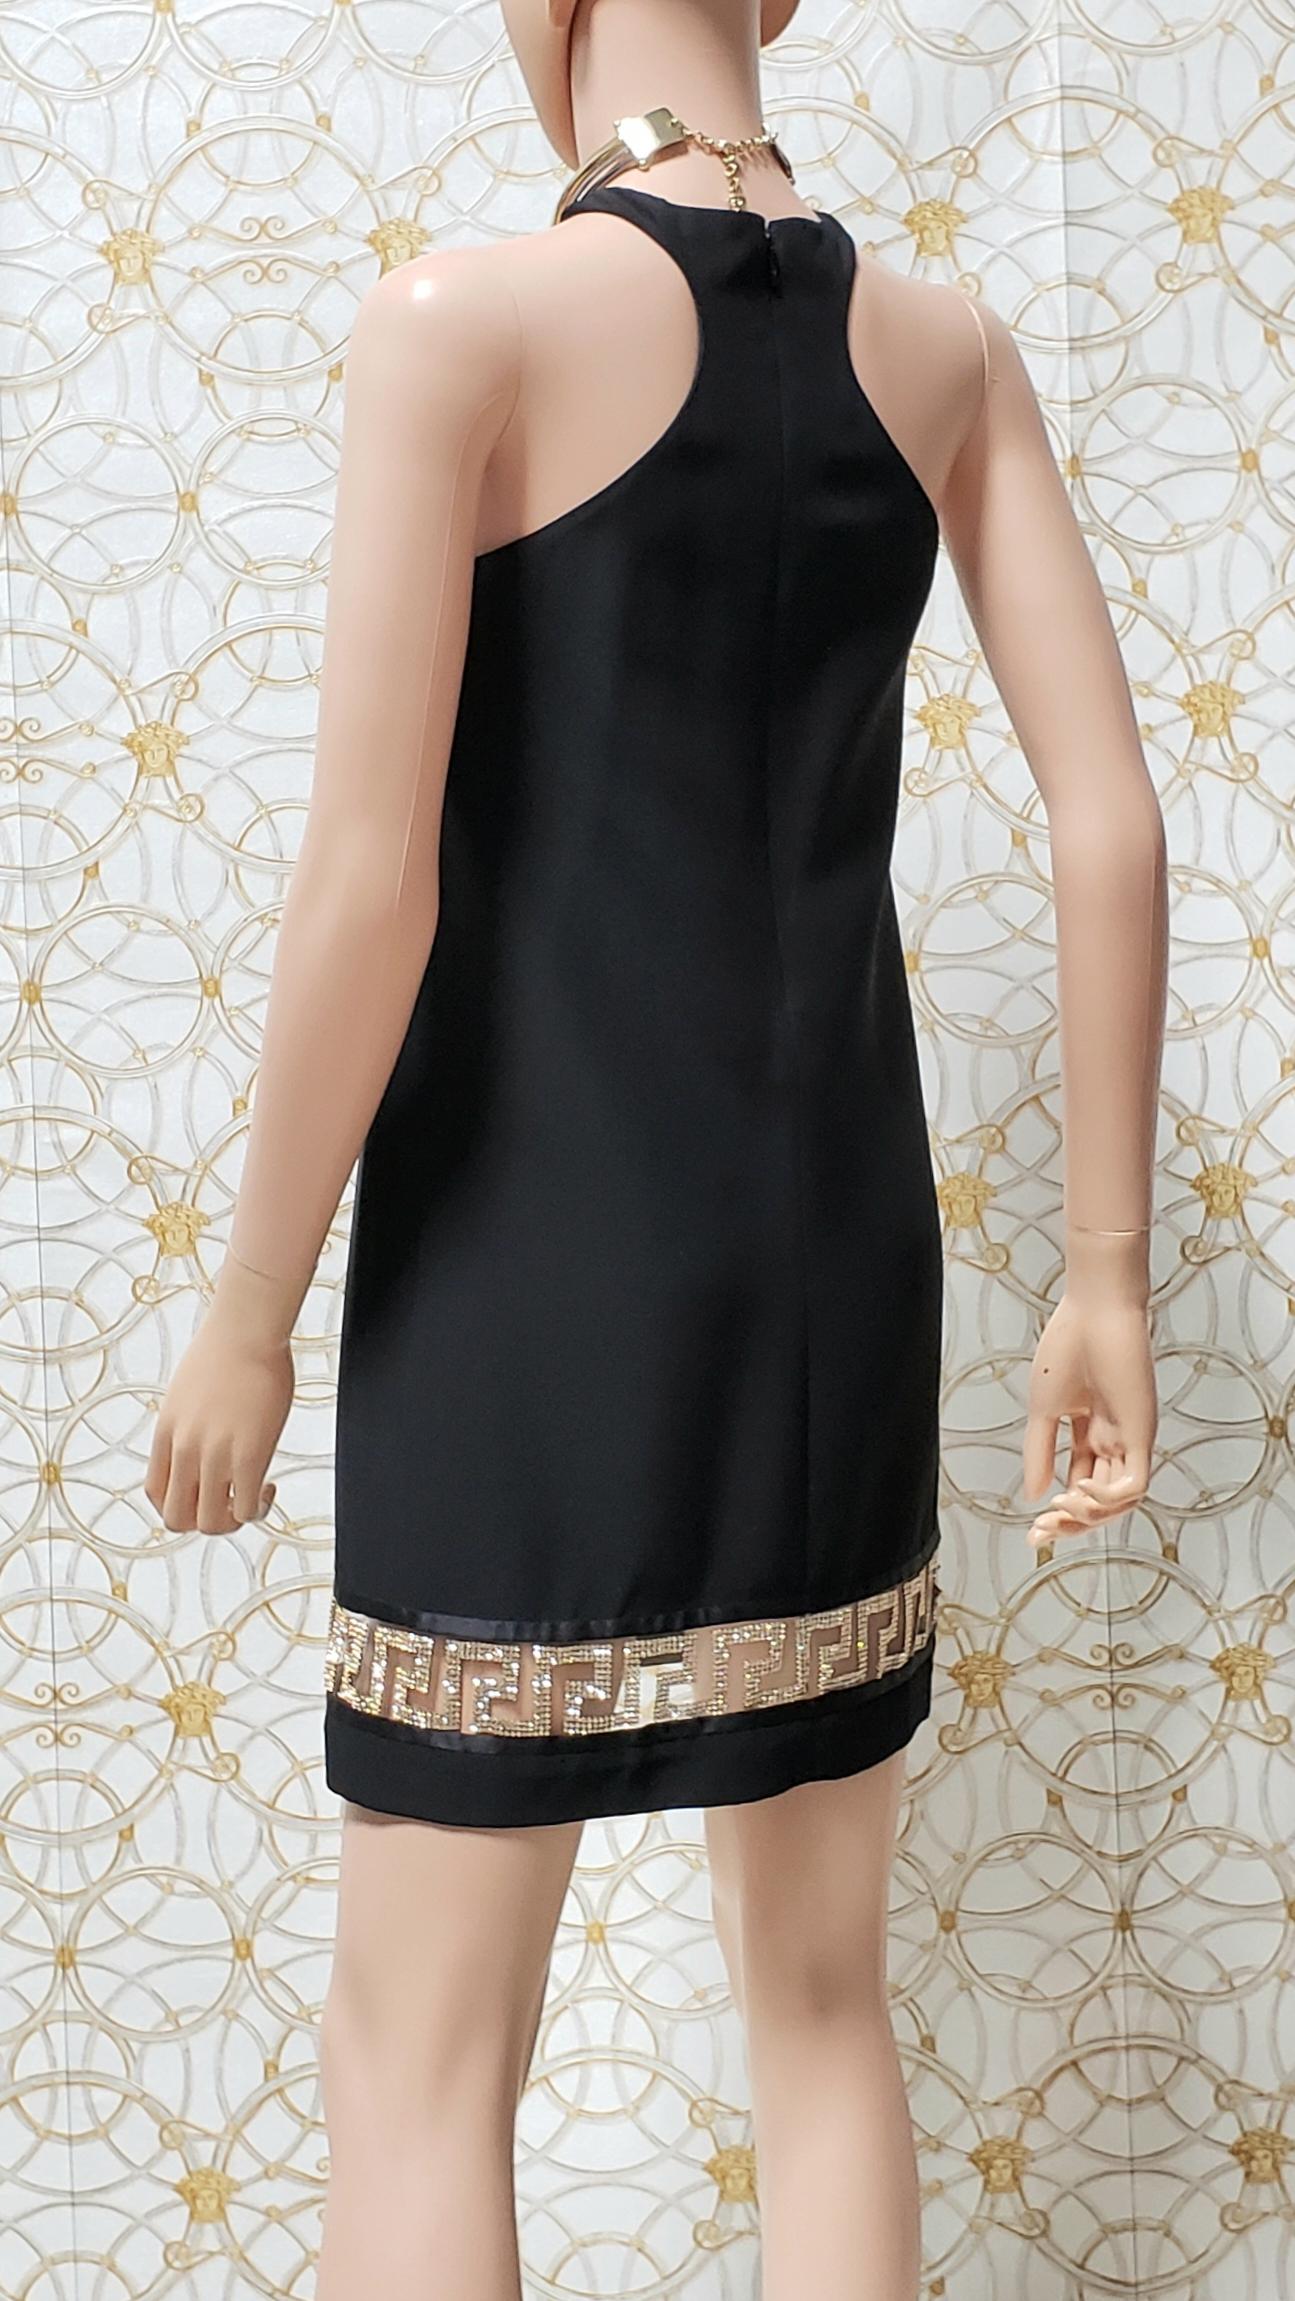 Resort 2015 look # 25 VERSACE BLACK CRYSTAL-EMBELLISHED SILK-CADY DRESS 38 - 2 For Sale 6